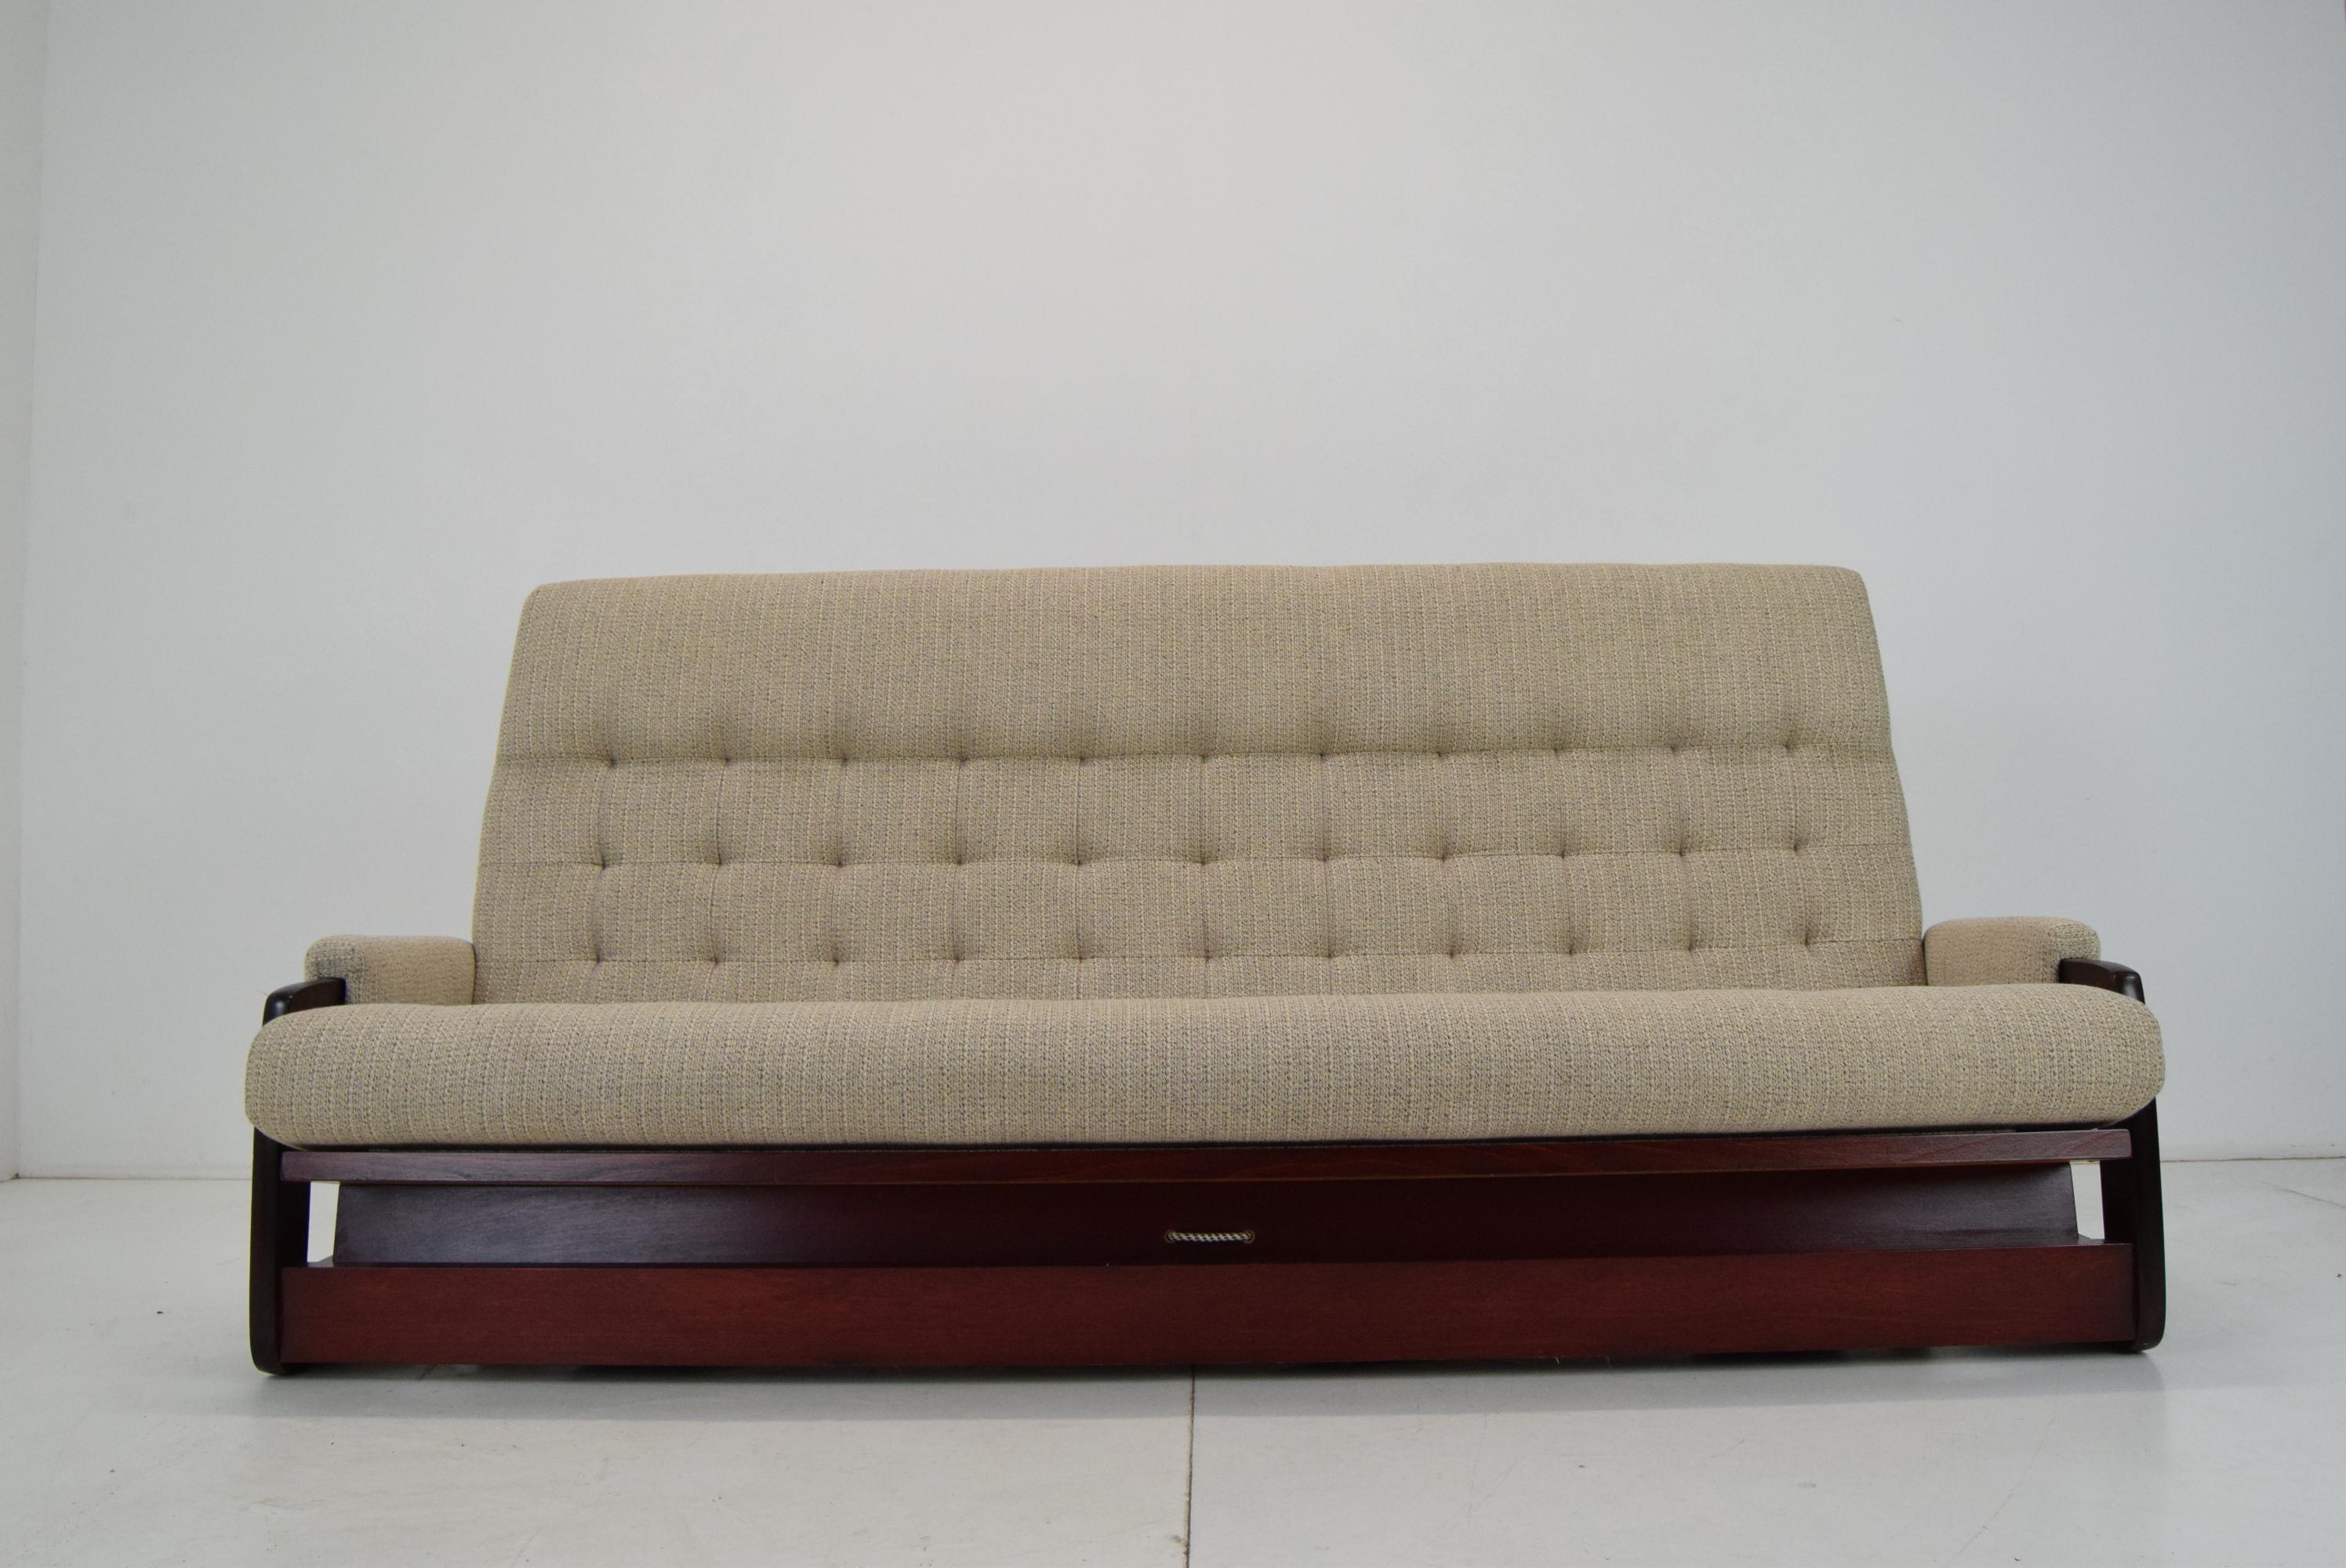 Fin du 20e siècle Canapé ou lit de repos trois places, années 1980 en vente